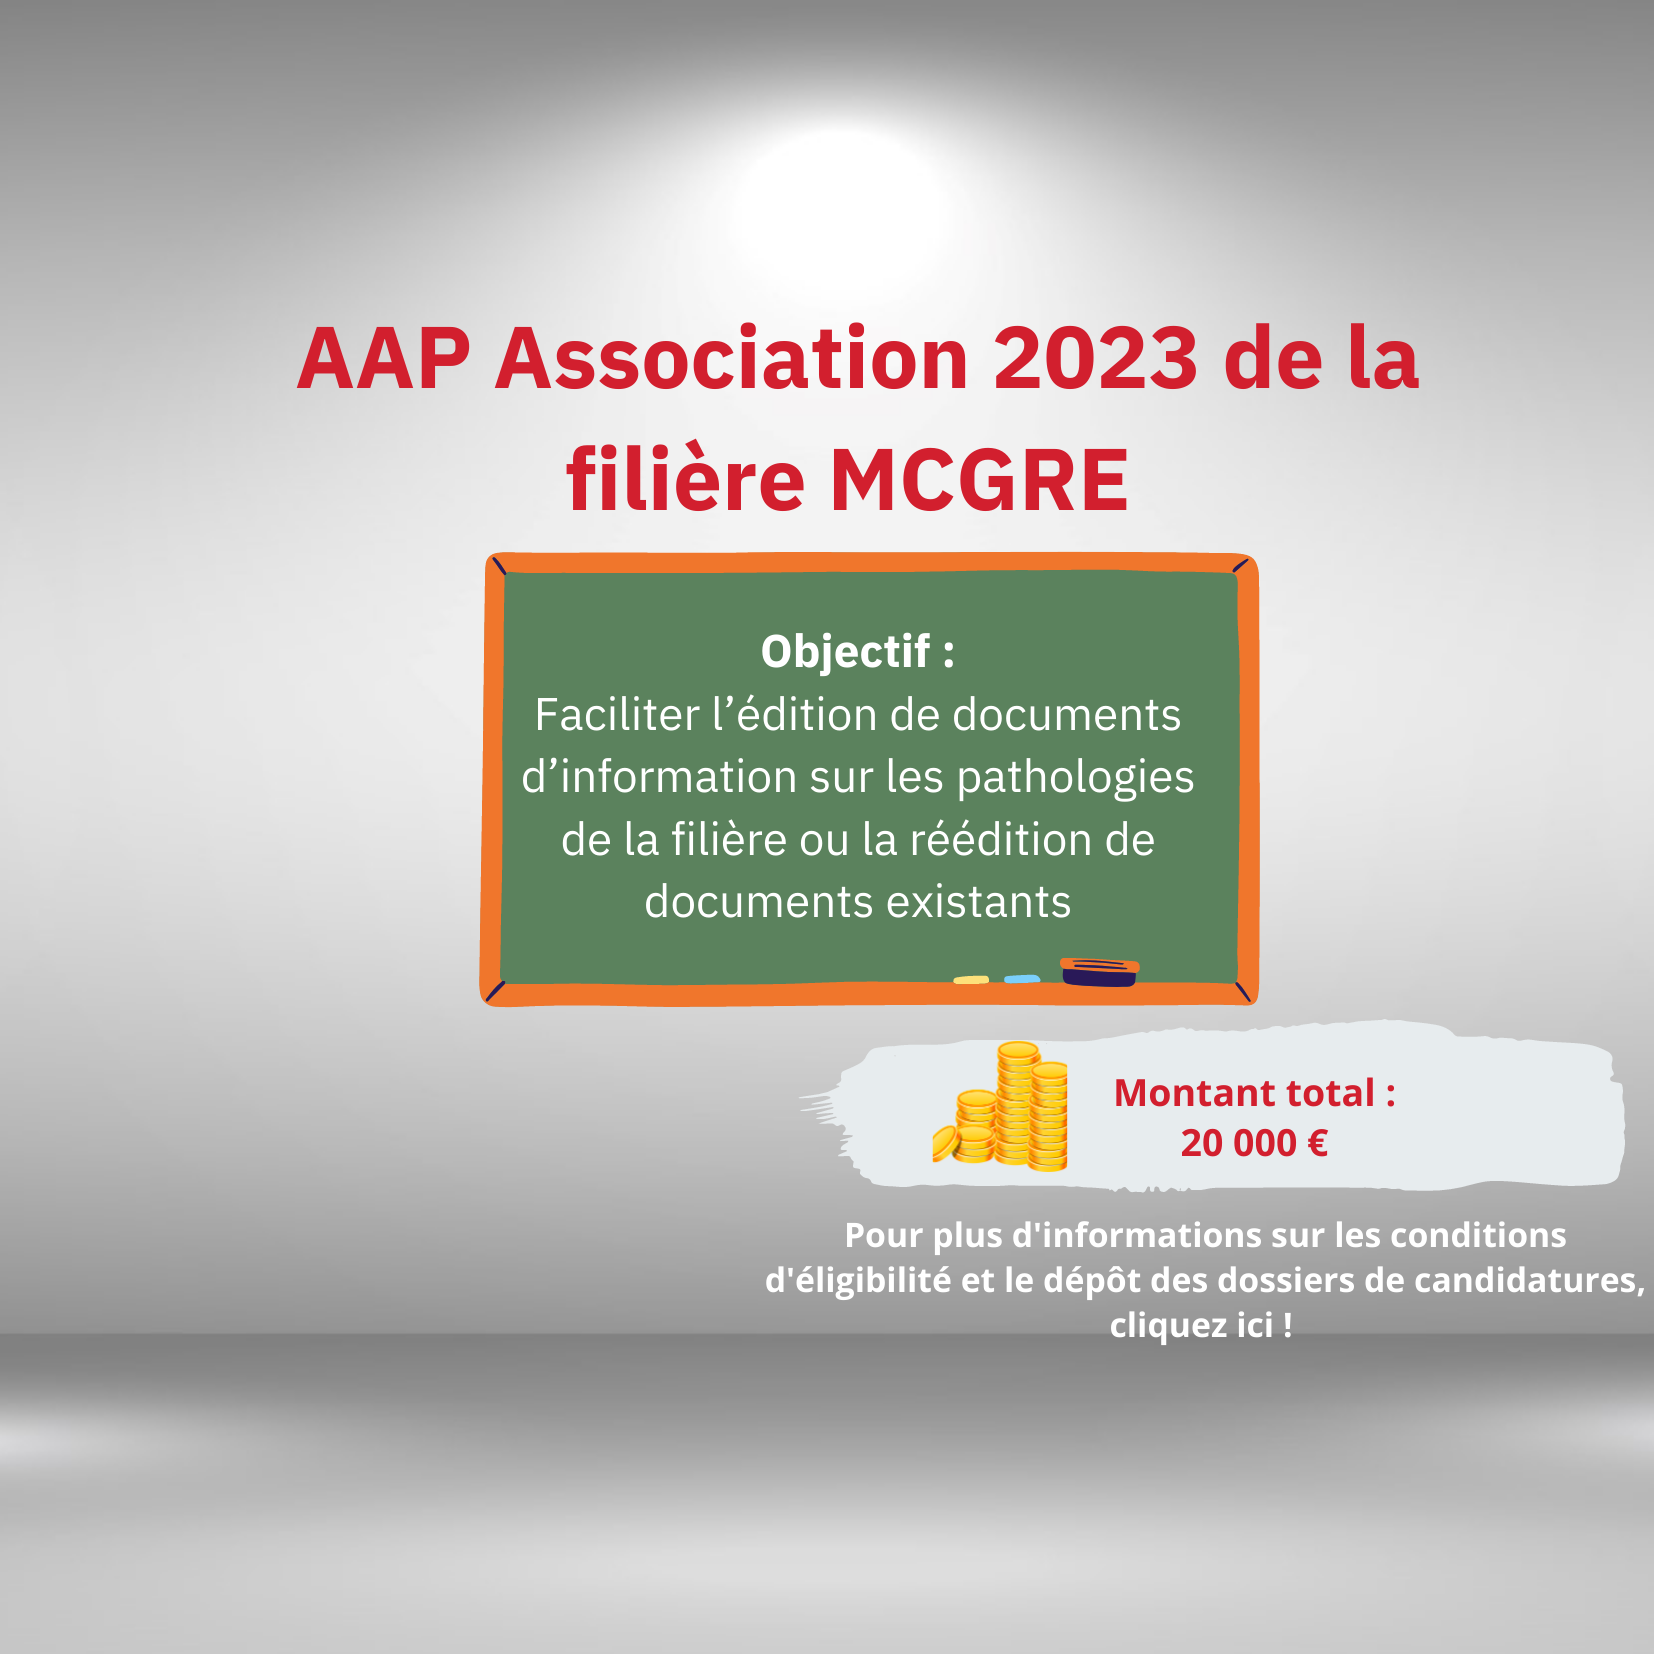 AAP Association 2023 